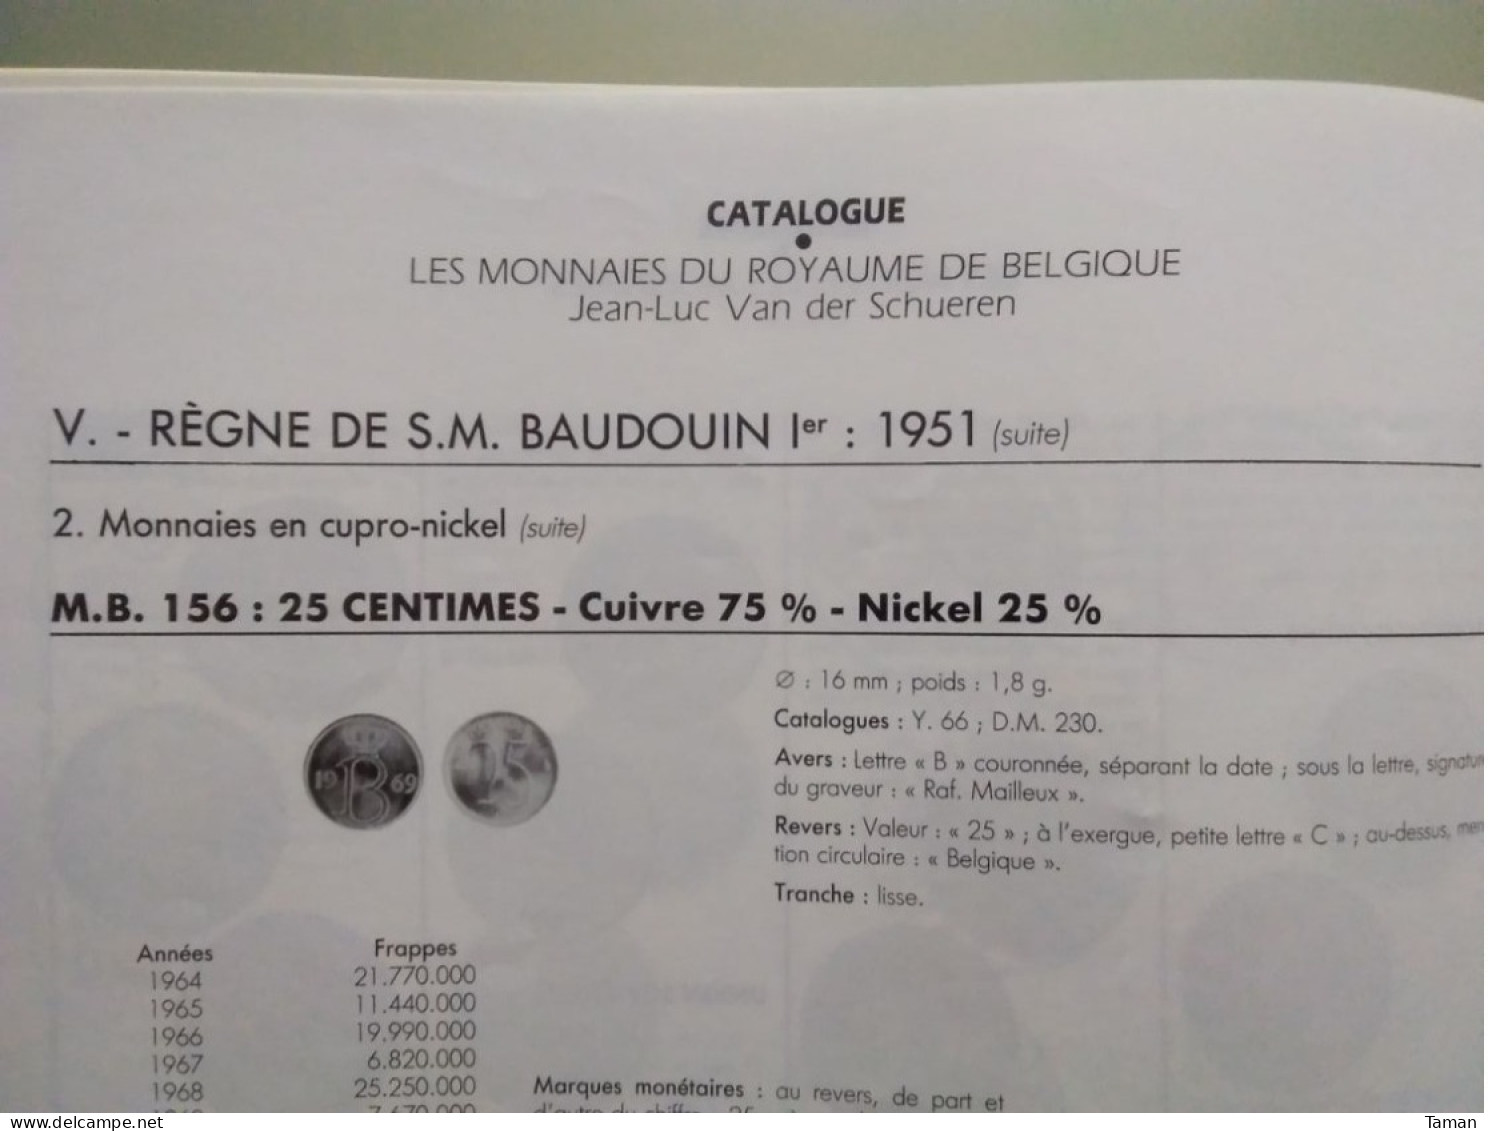 Numismatique & change - L'héritage de Napoléon - Les bronzes coulés du Maroc - Les billets de chemin de fer - Méreaux